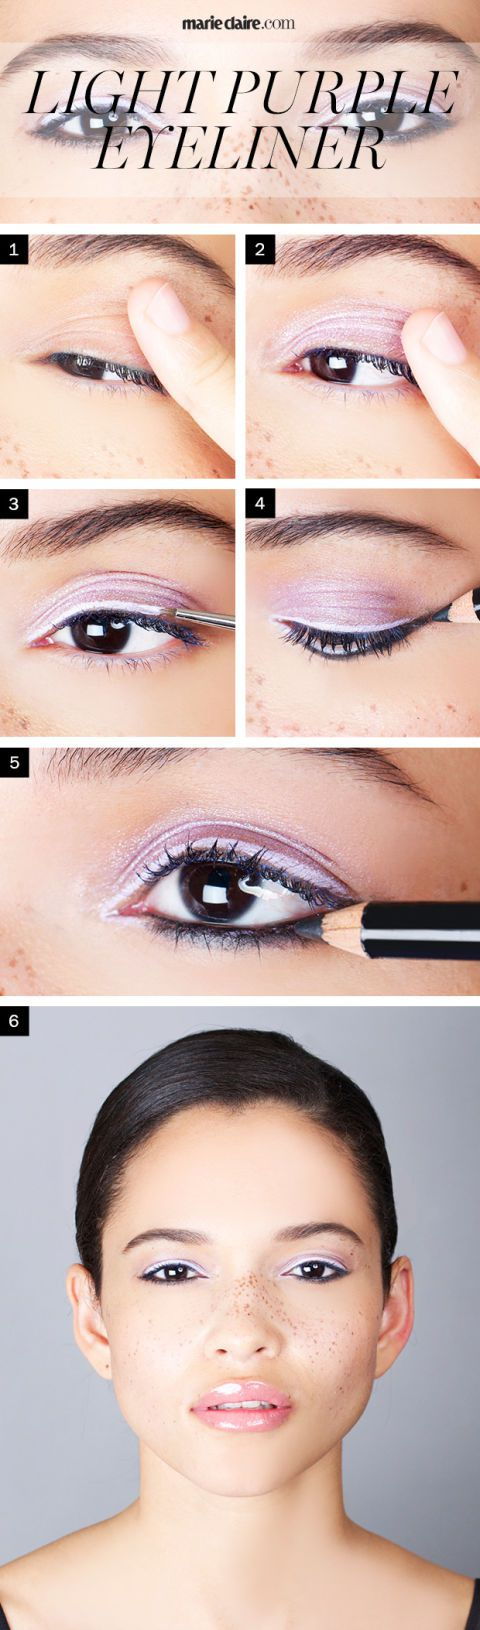 kako to wear light purple eyeliner